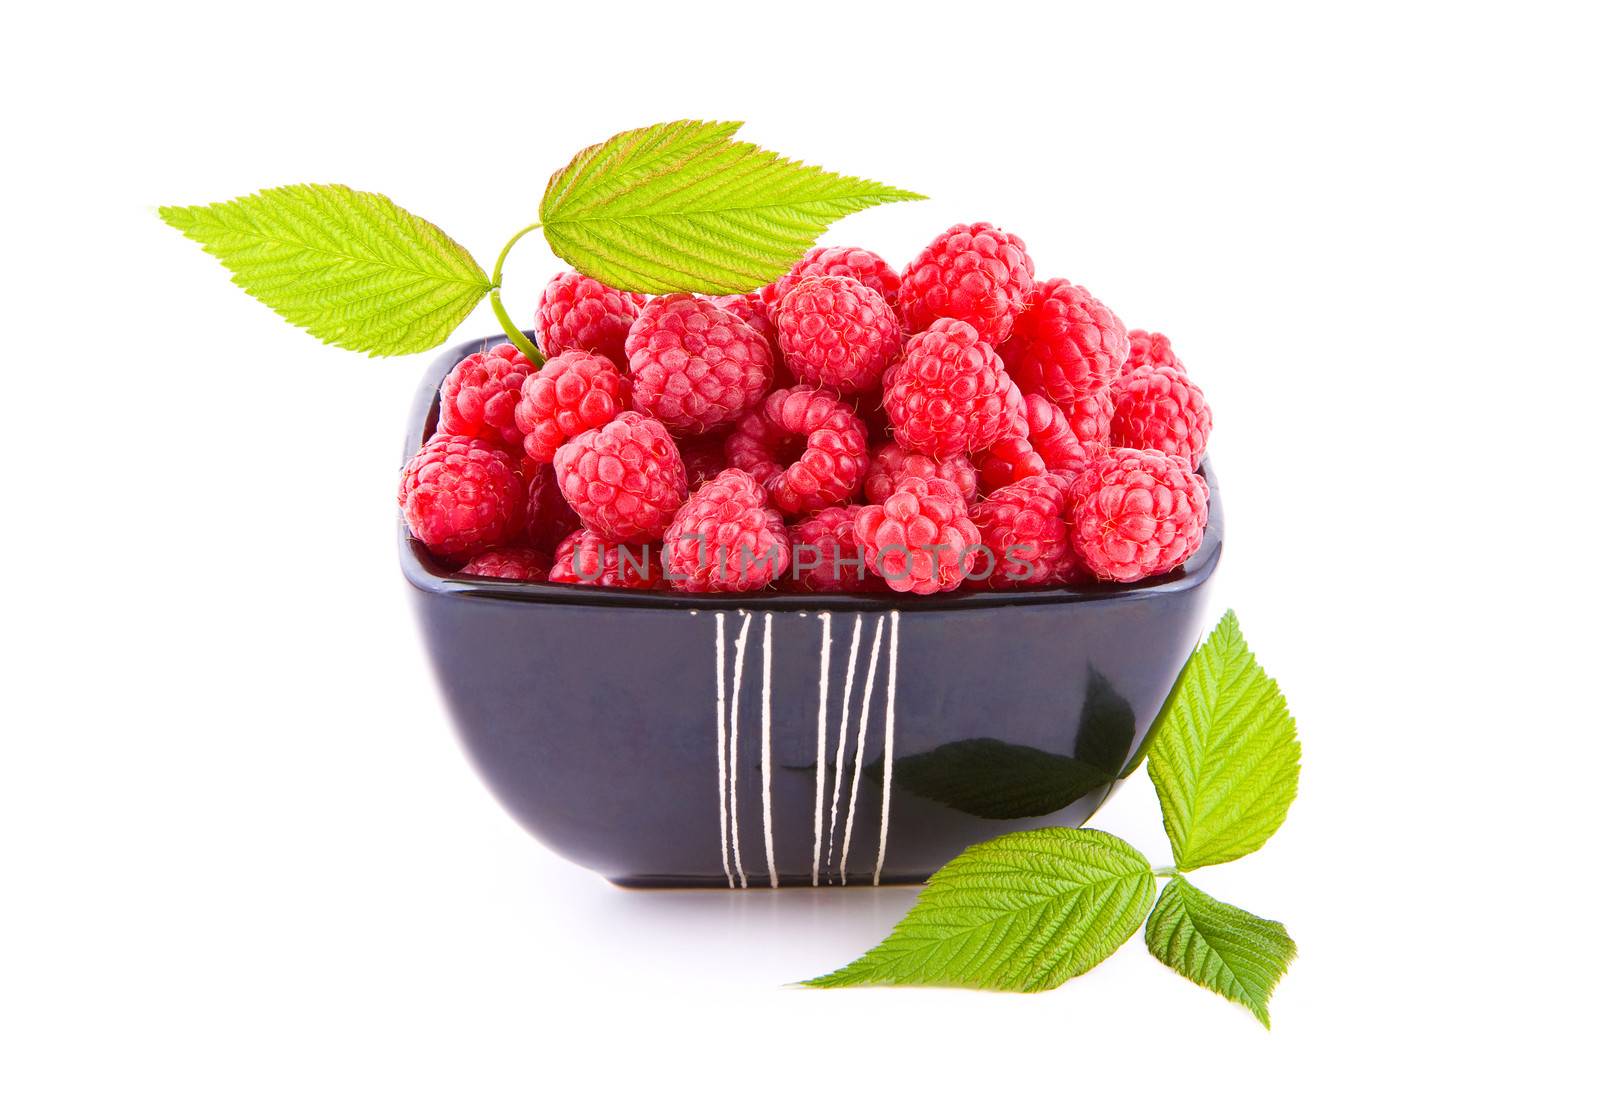 Raspberries in a bowl by Gbuglok